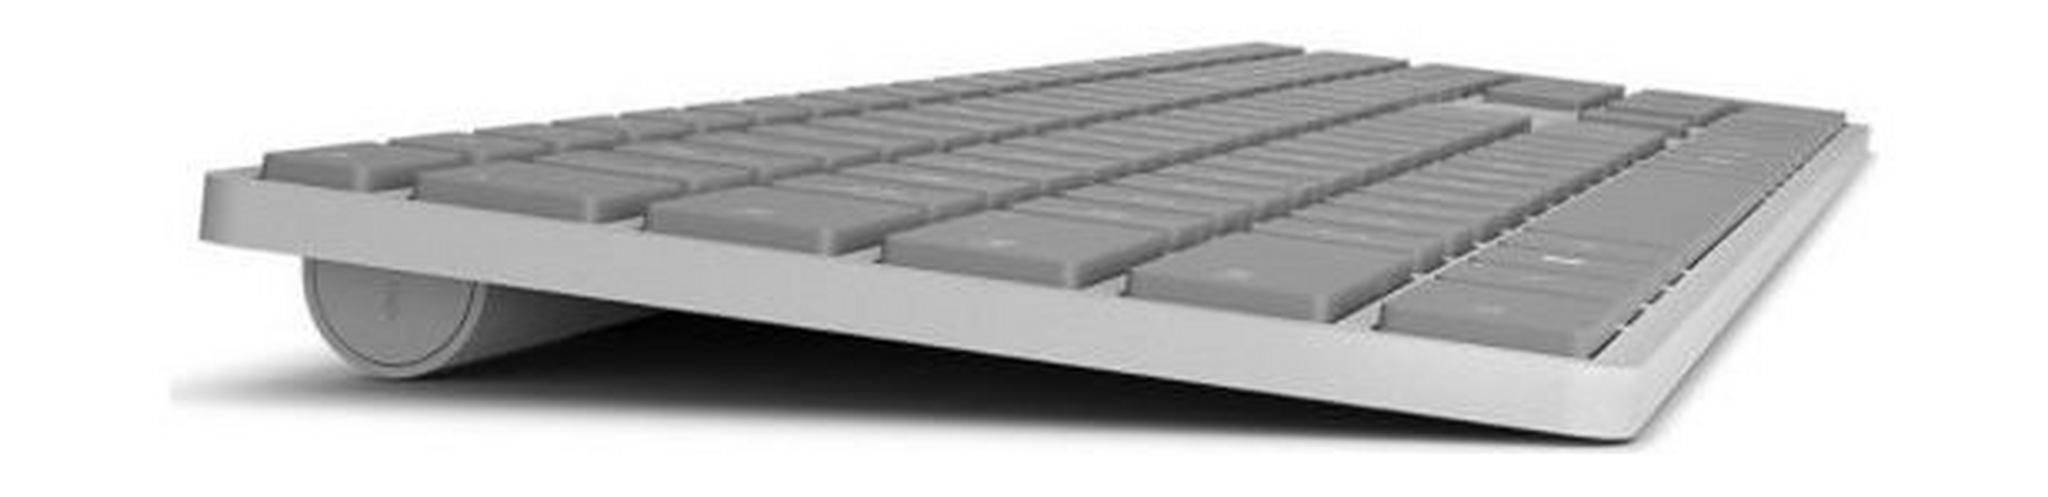 لوحة المفاتيح مايكروسوفت سيرفيس بتقنية البلوتوث-  WS200022